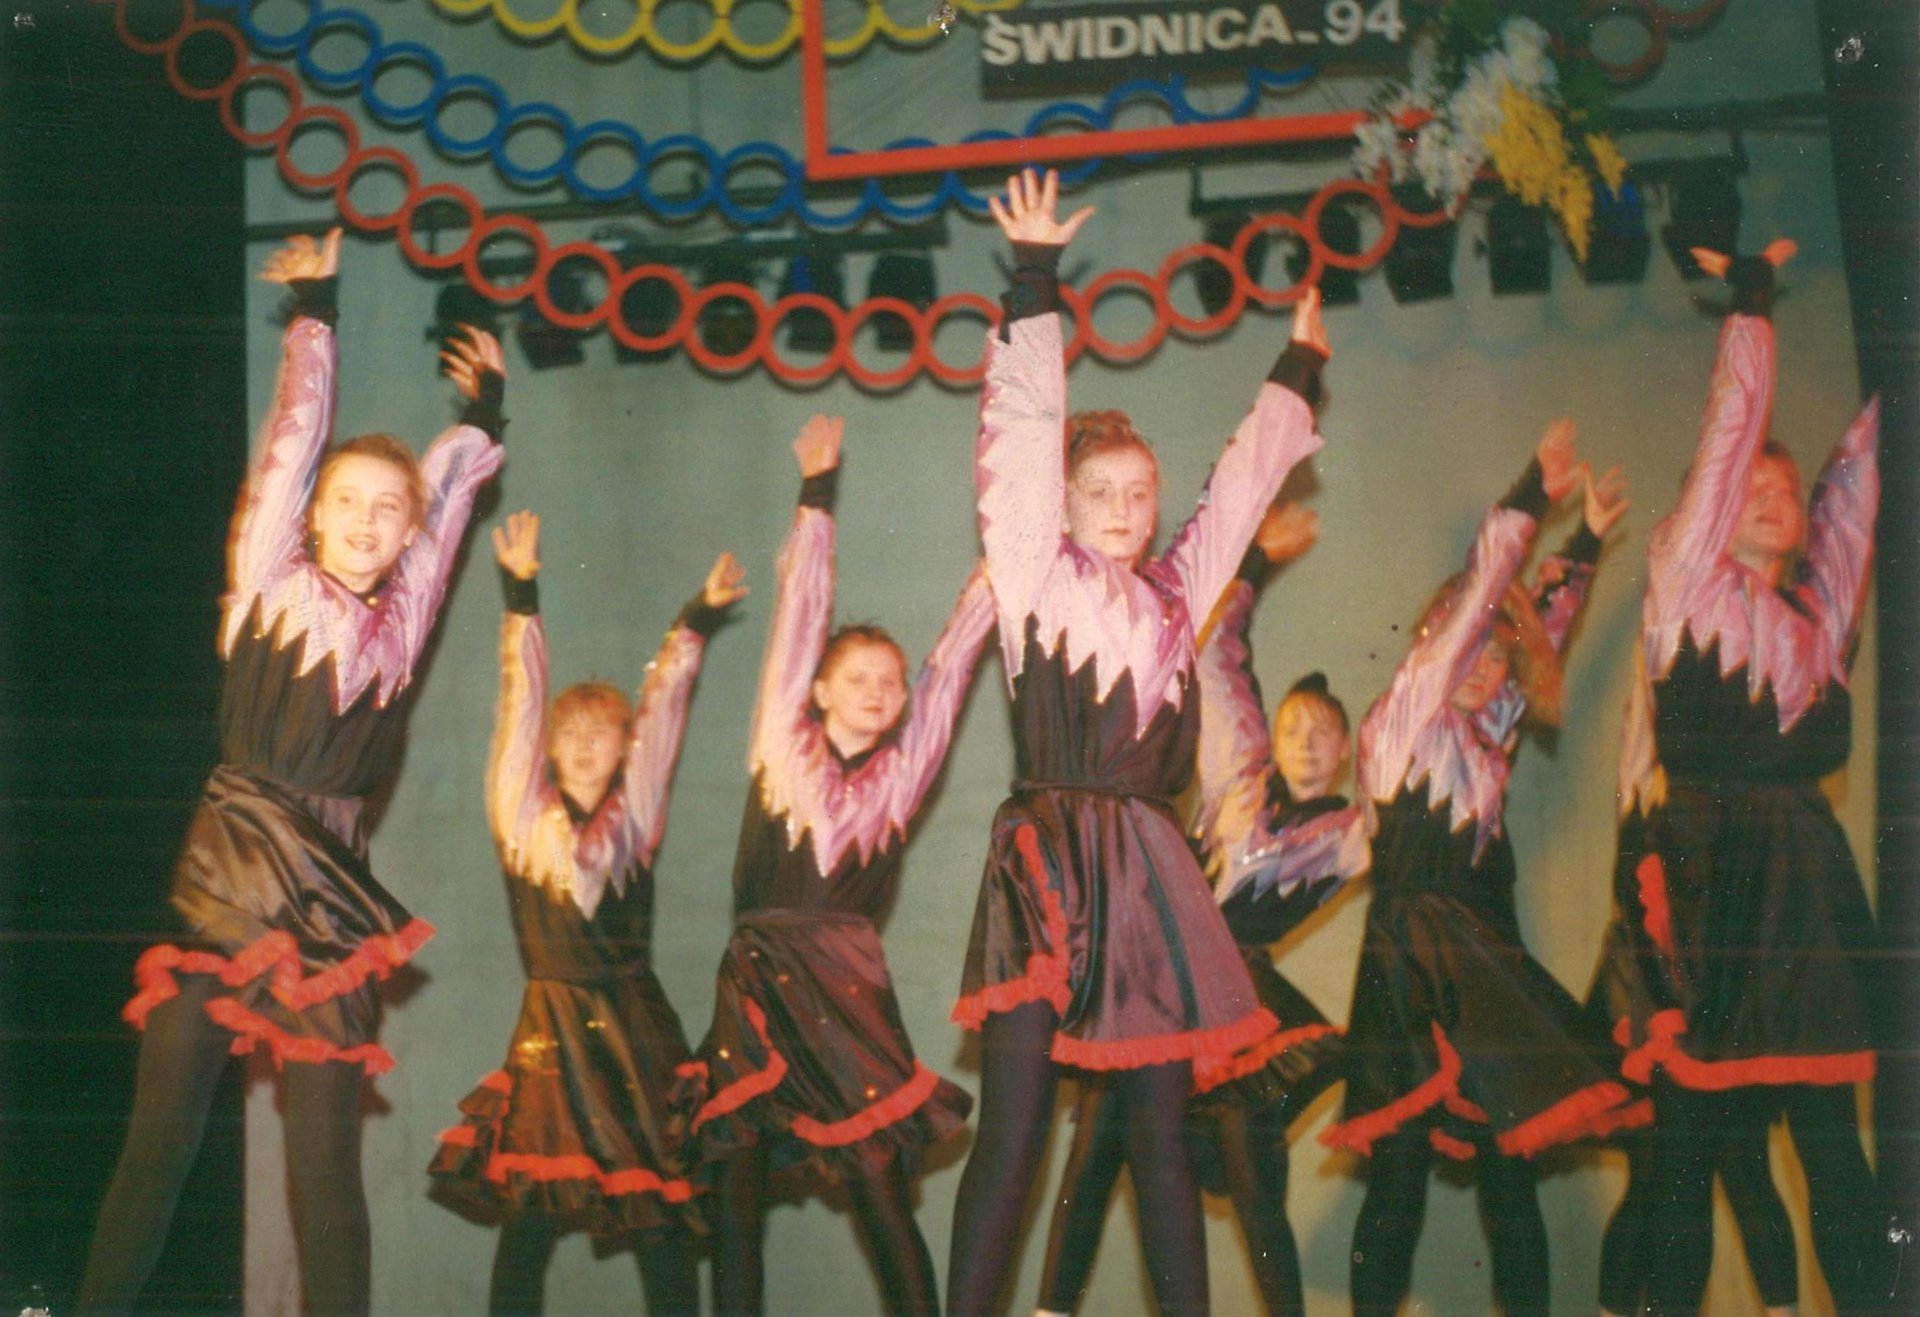 426. Fotografie – Występy zespołu tanecznego ZZK Kolejarz w Świdnicy, 1994 r.